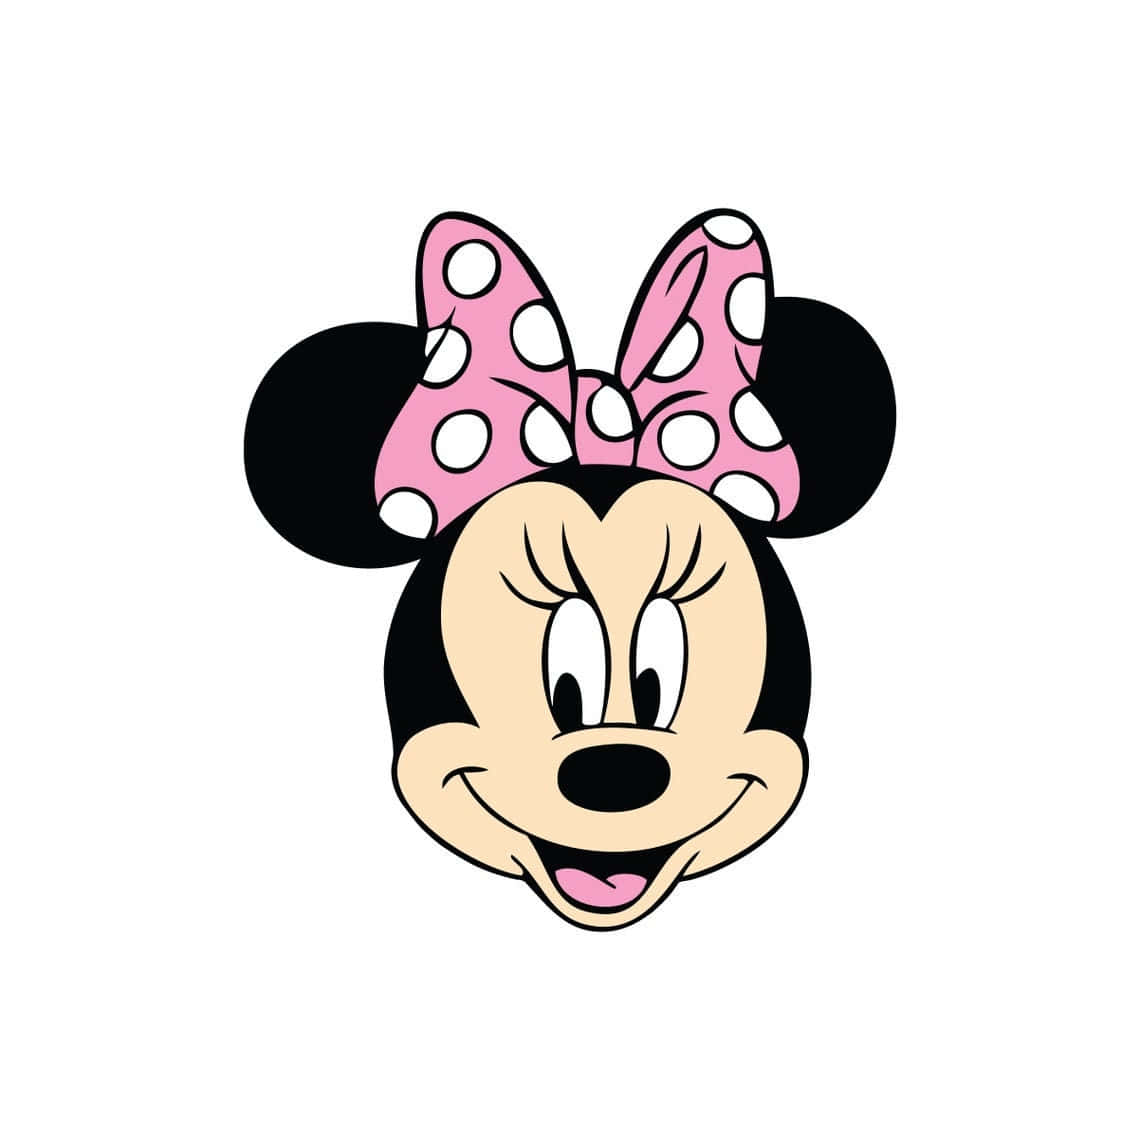 Sødtpersonificeret - Minnie Mouse